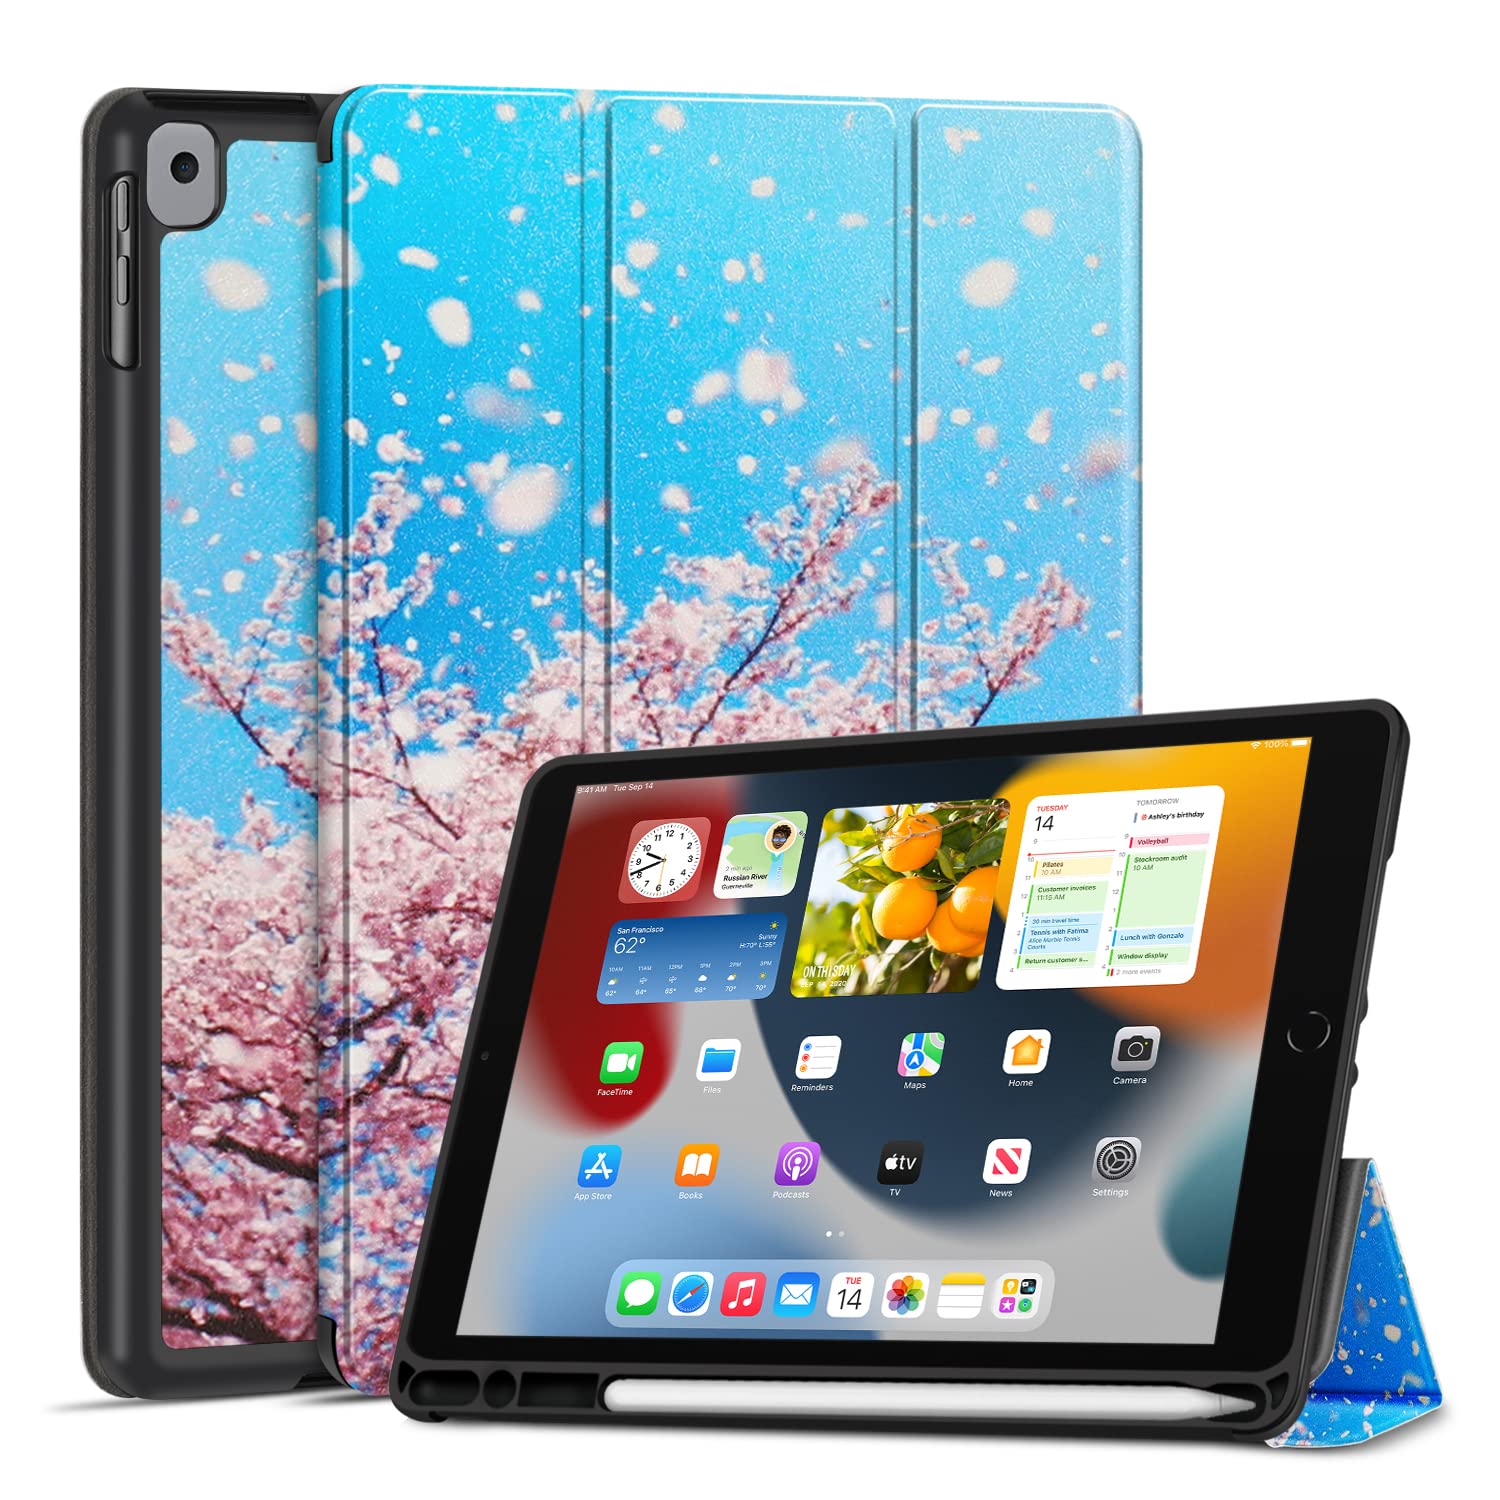 TNP iPad Hülle für iPad 9./8./7. Generation 10,2 Zoll 2021/2020/2019 Modell, Schutzhülle mit Stifthalter, dünner und weicher iPad Case aus TPU, iPad Cover mit Auto Schlaf/Wach Funktion, Kirschblüten